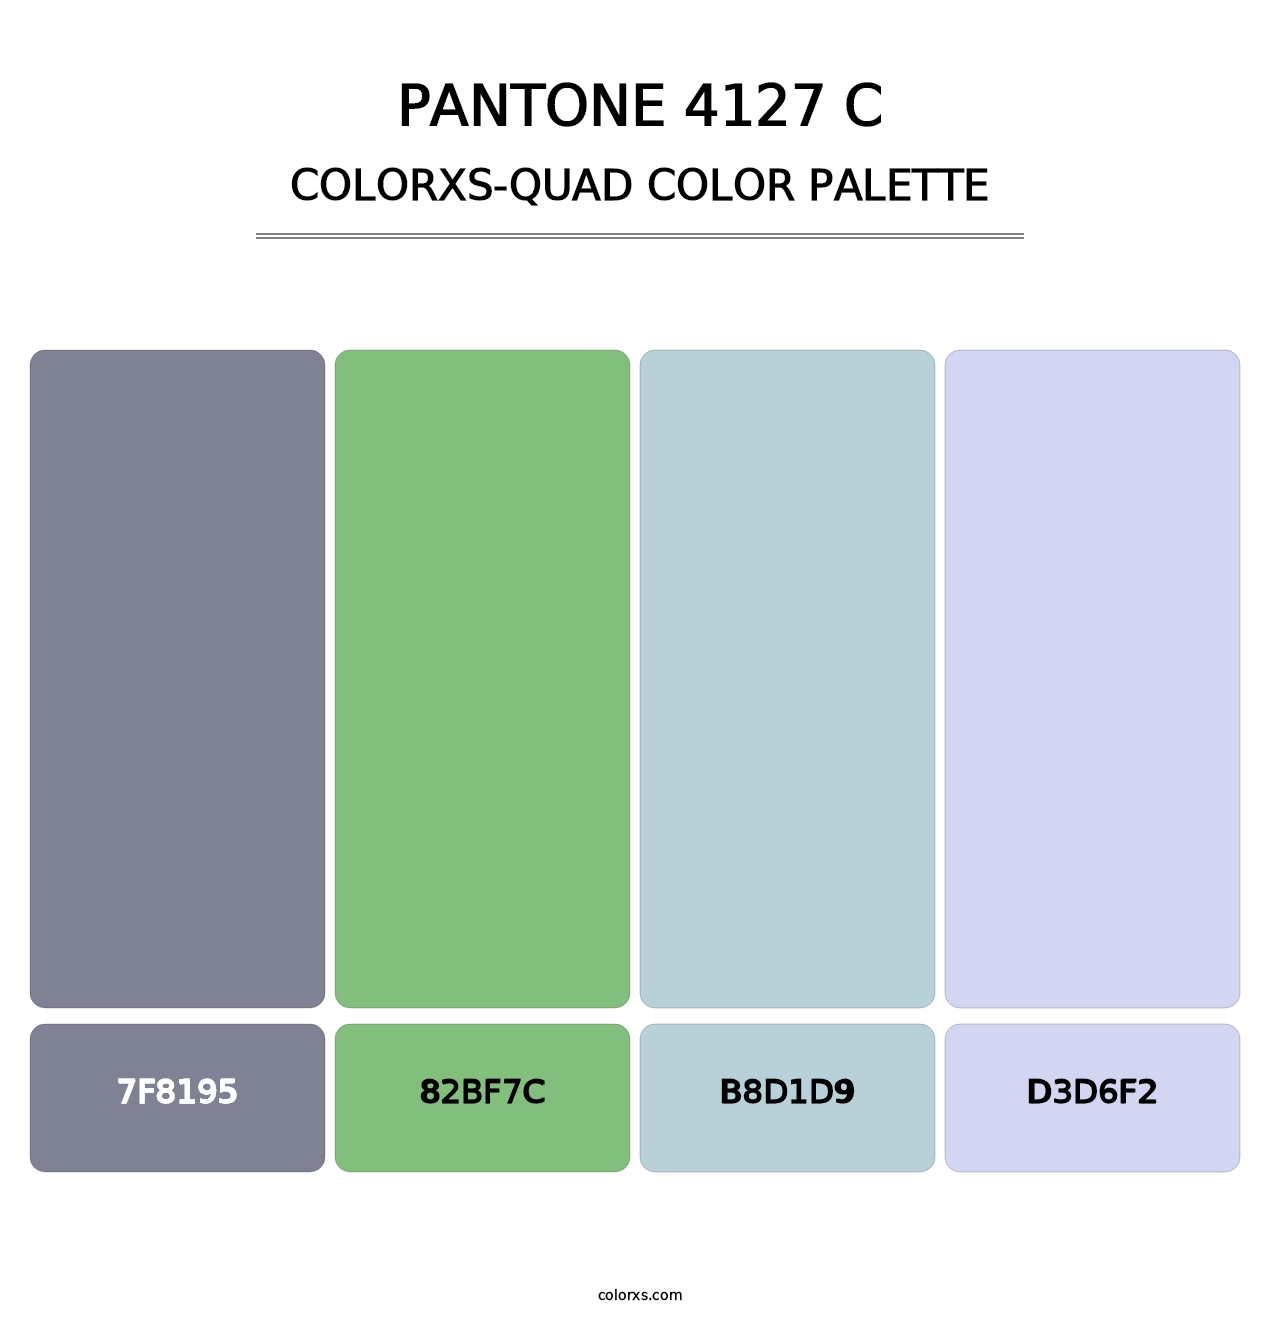 PANTONE 4127 C - Colorxs Quad Palette